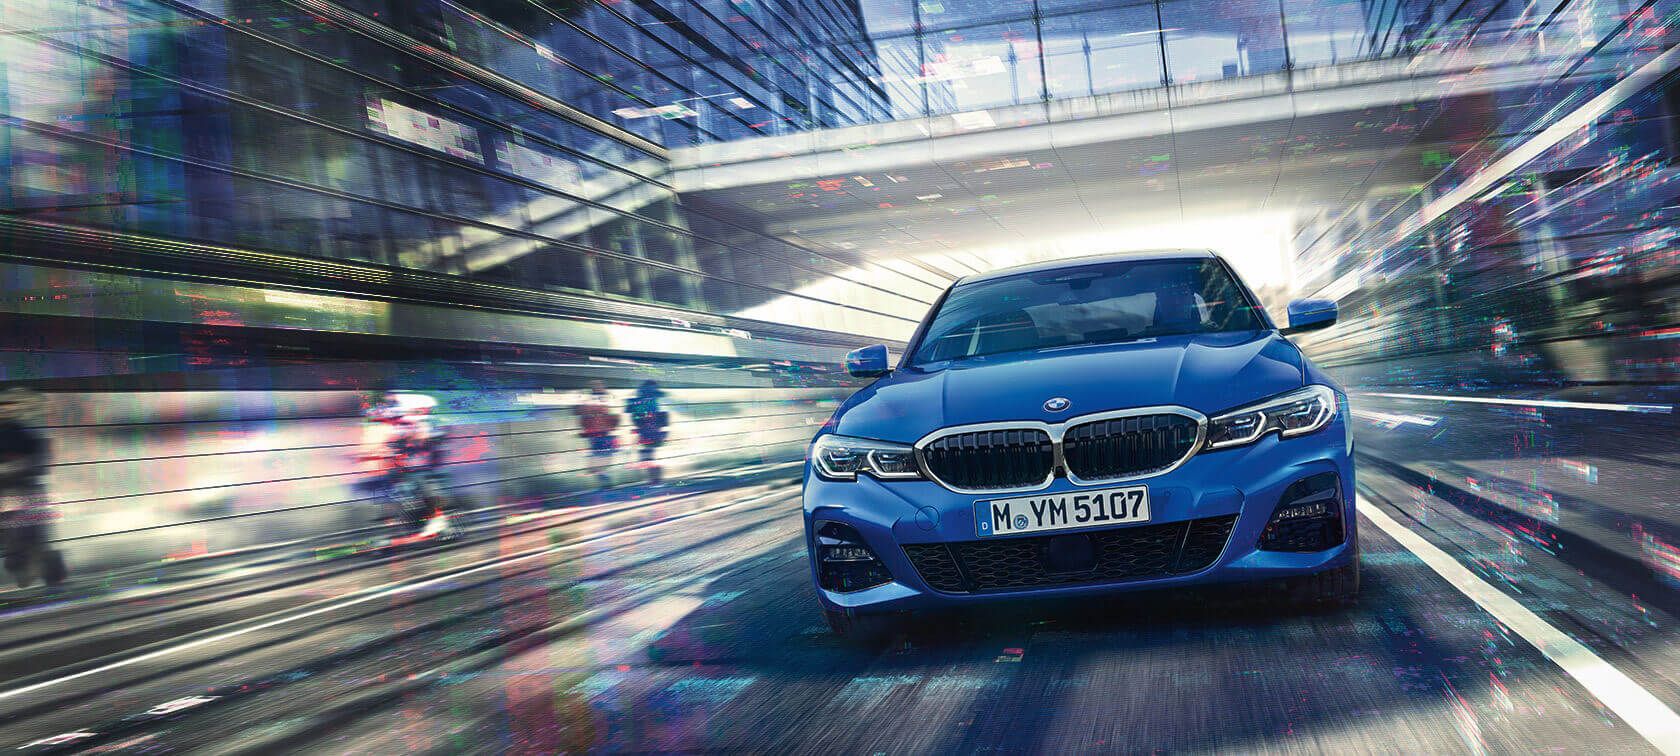 Harga BMW 3 Series Sedan Terbaru, Spesifikasi dan Interior 2022!